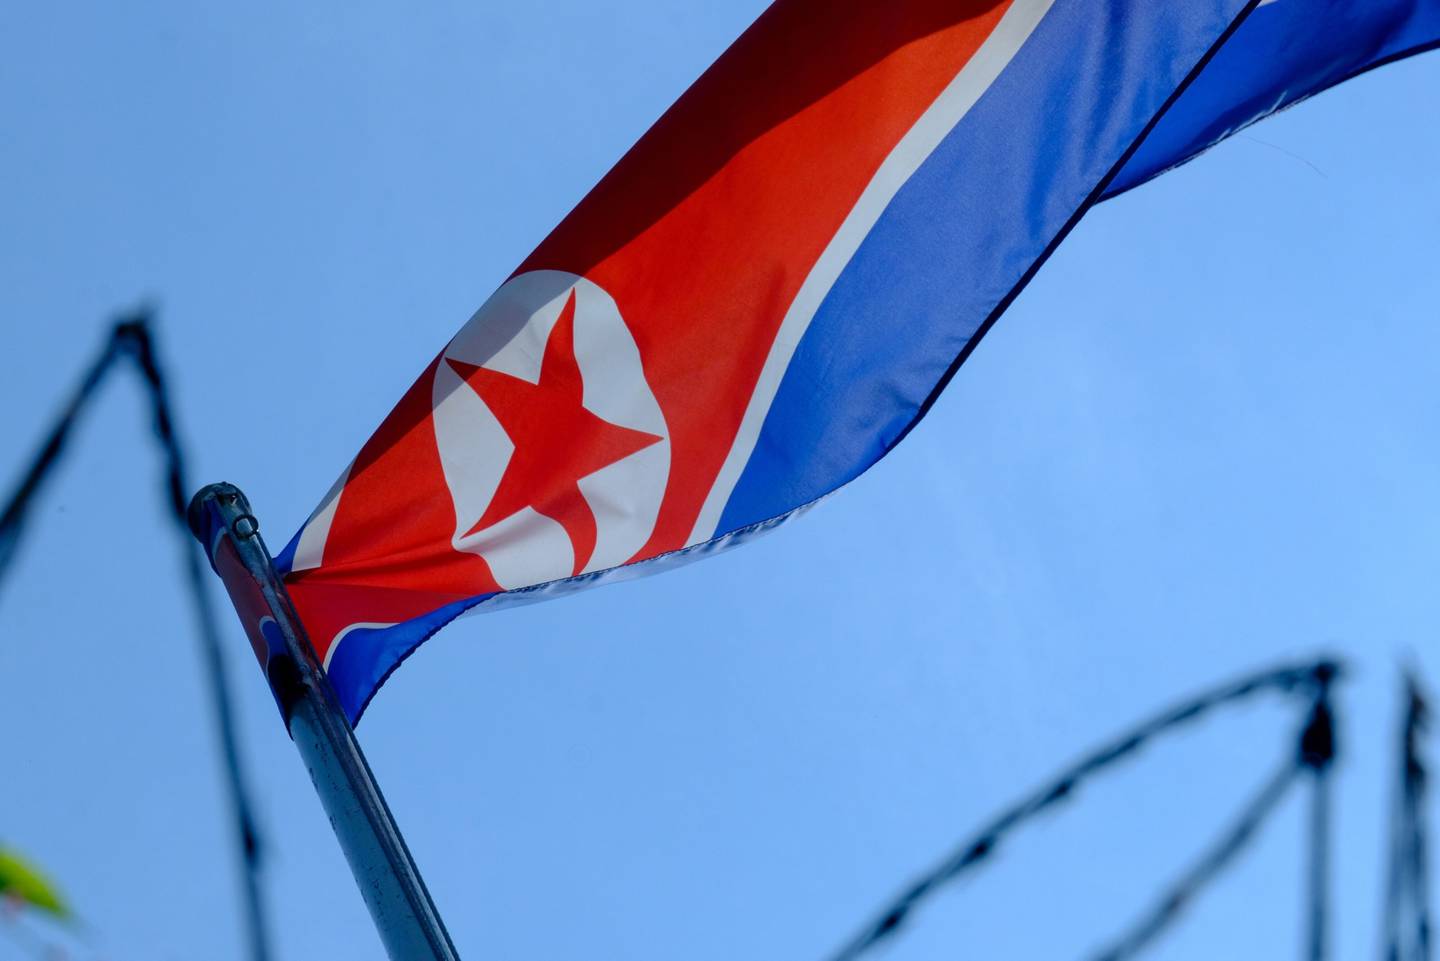 Una bandera de Corea del Norte ondea en el recinto de la Embajada de Corea del Norte en Kuala Lumpur, Malasia, el sábado 20 de marzo de 2021. Fotógrafo: Samsul Said/Bloomberg